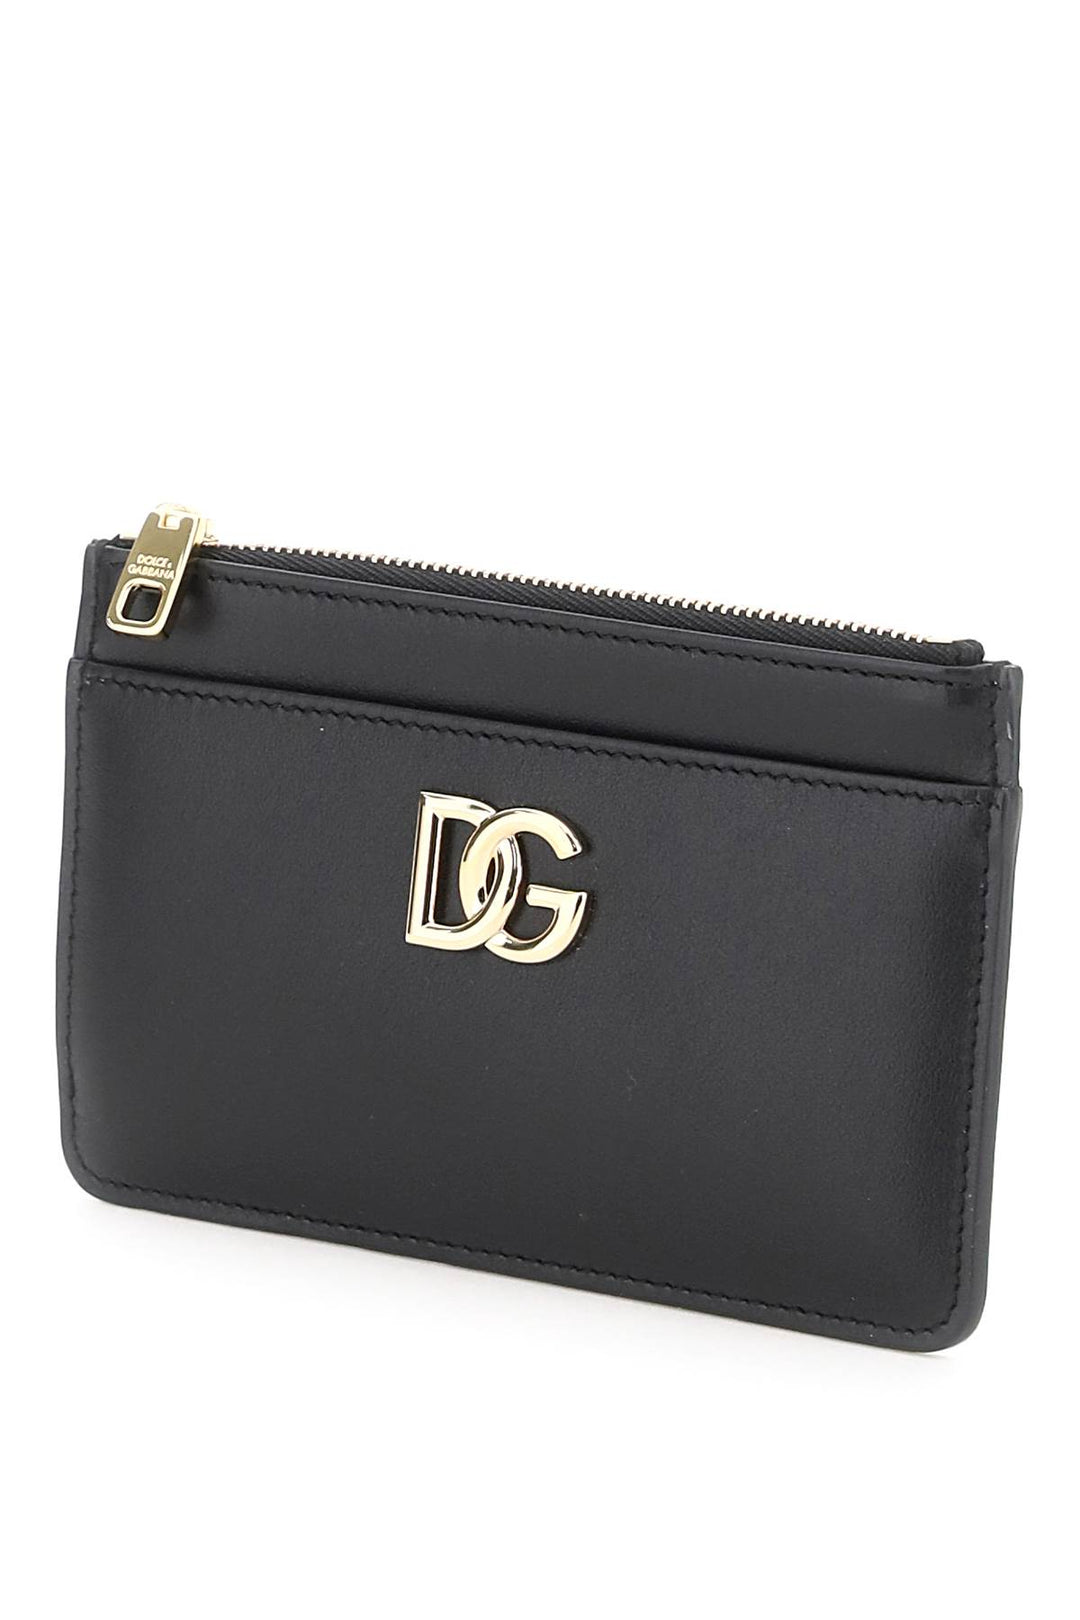 Porta Carte Dg Con Zip - Dolce & Gabbana - Donna